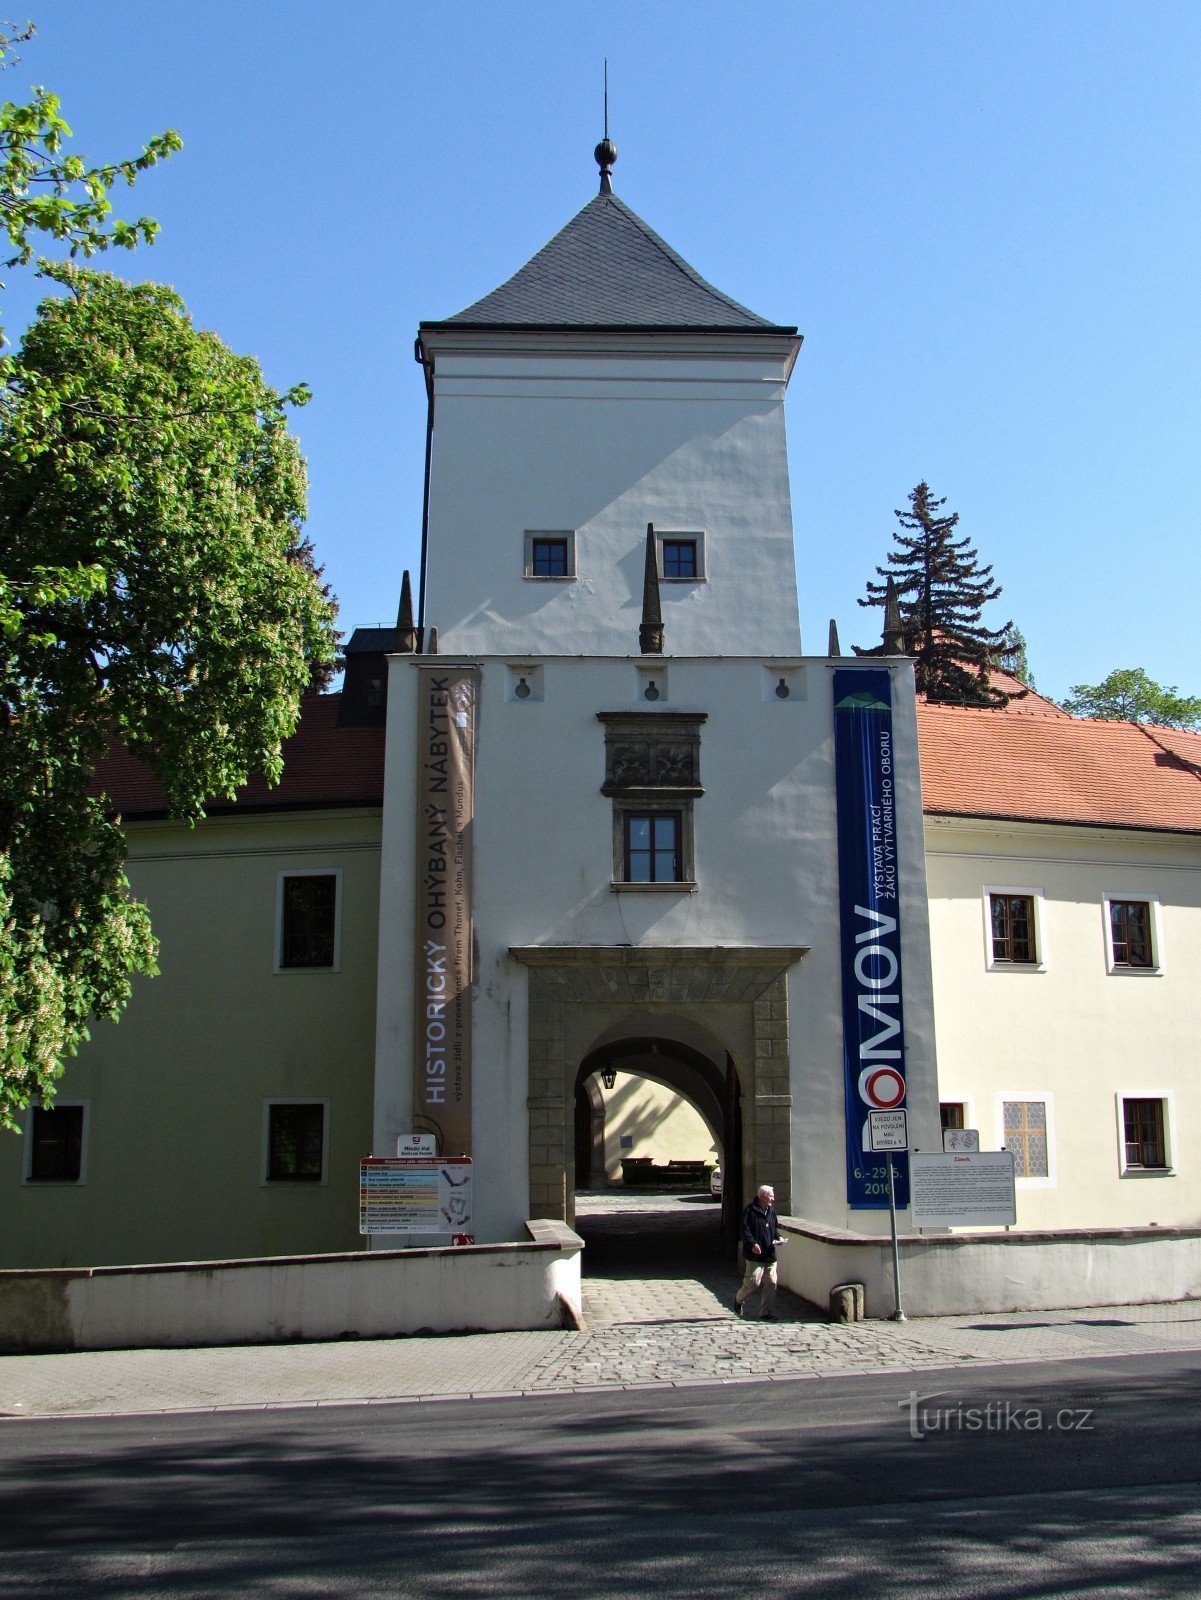 Rundvisning på slottet i Bystřice pod Hostýnem